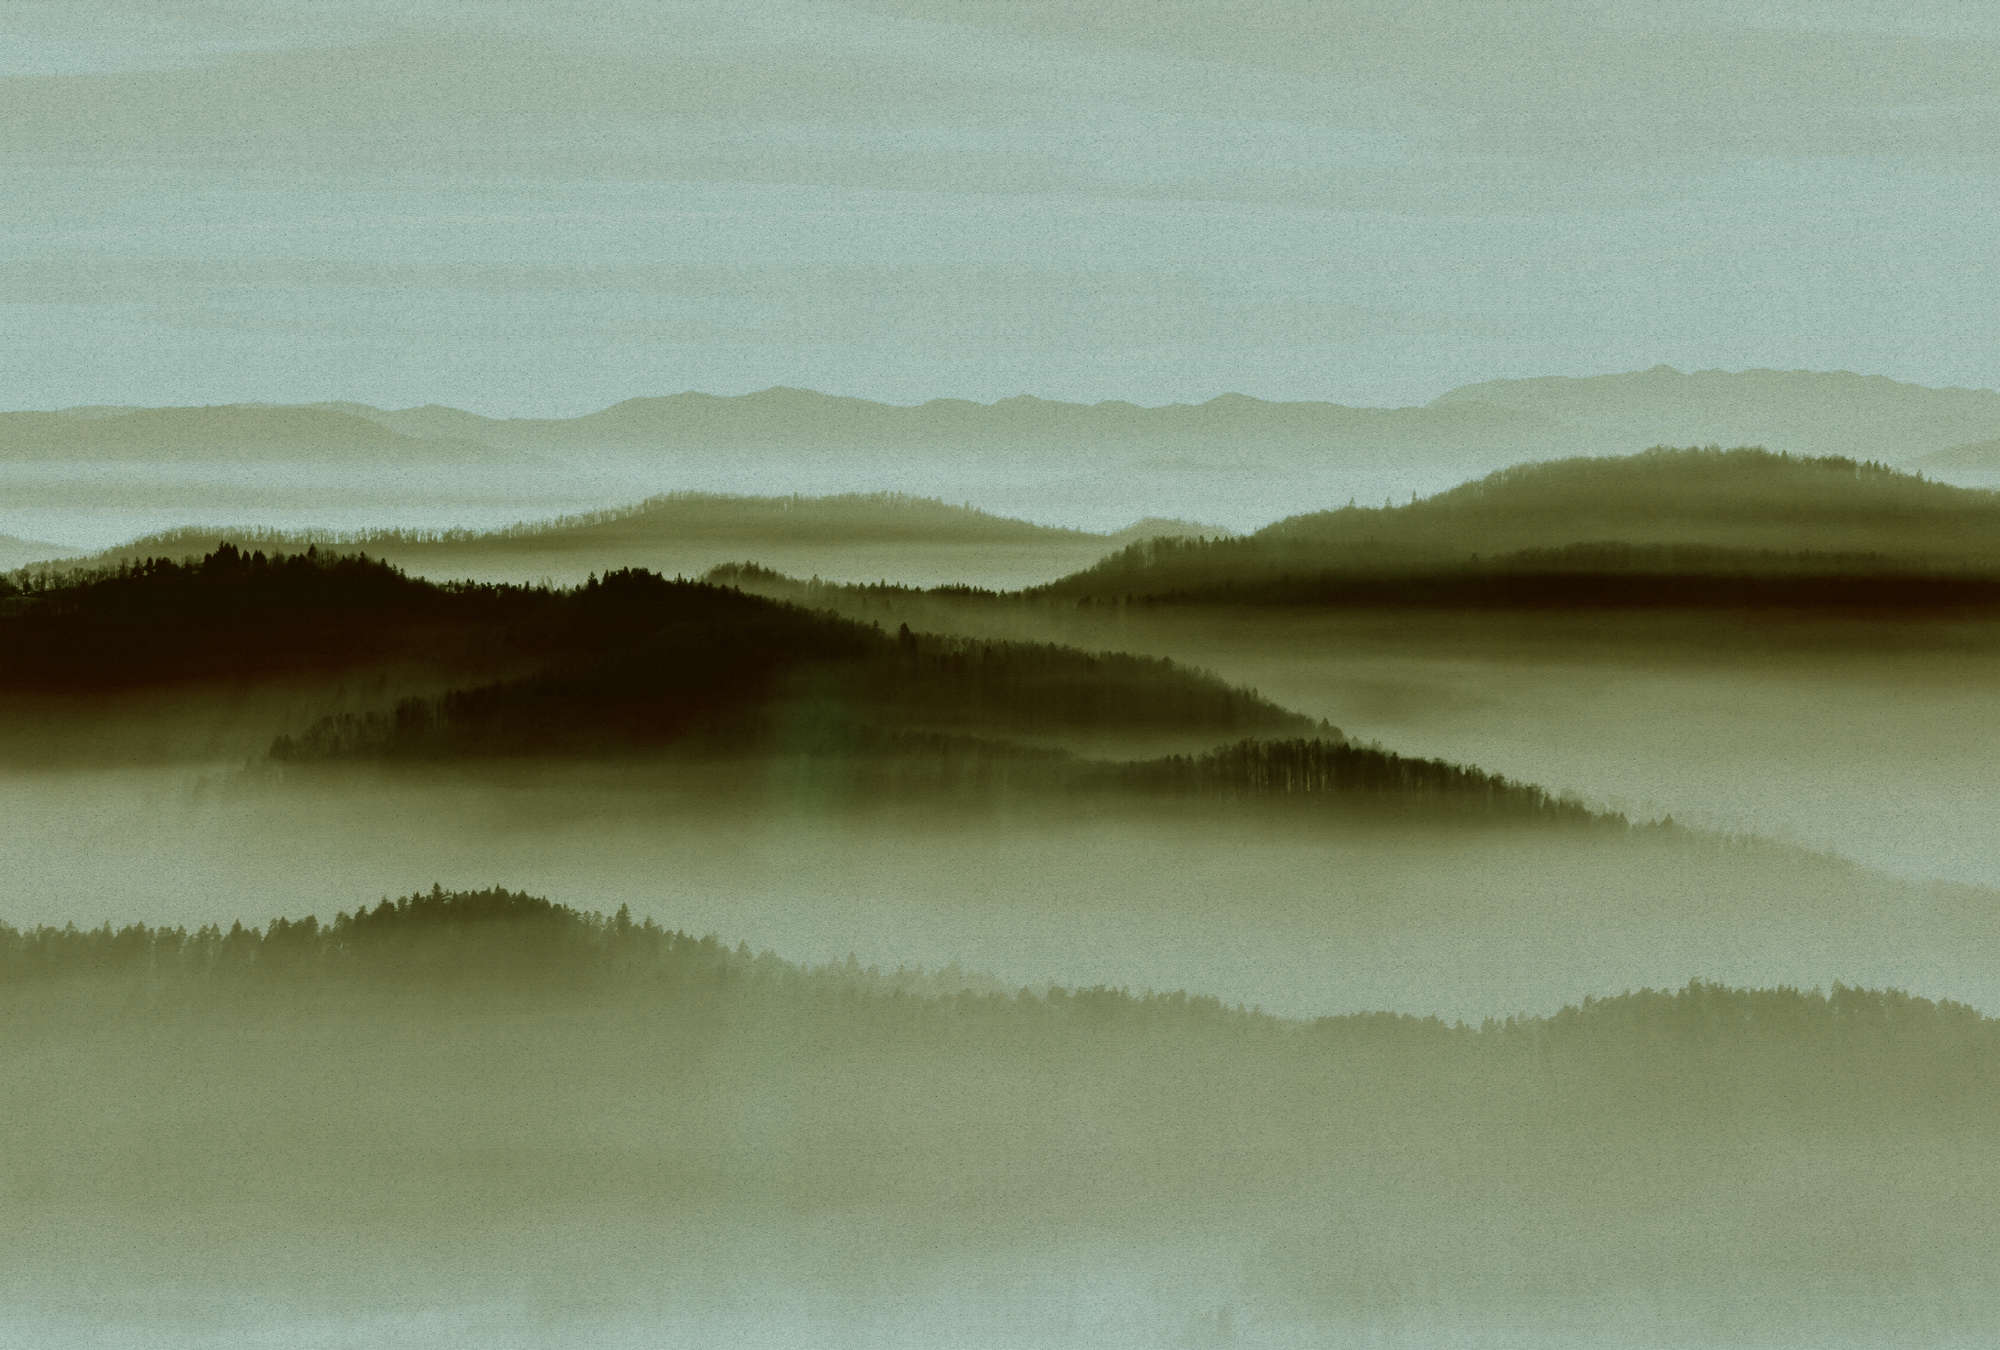             Horizon 2 - Papier peint structure carton avec paysage brumeux, nature Sky Line - beige, vert | À structure intissé
        